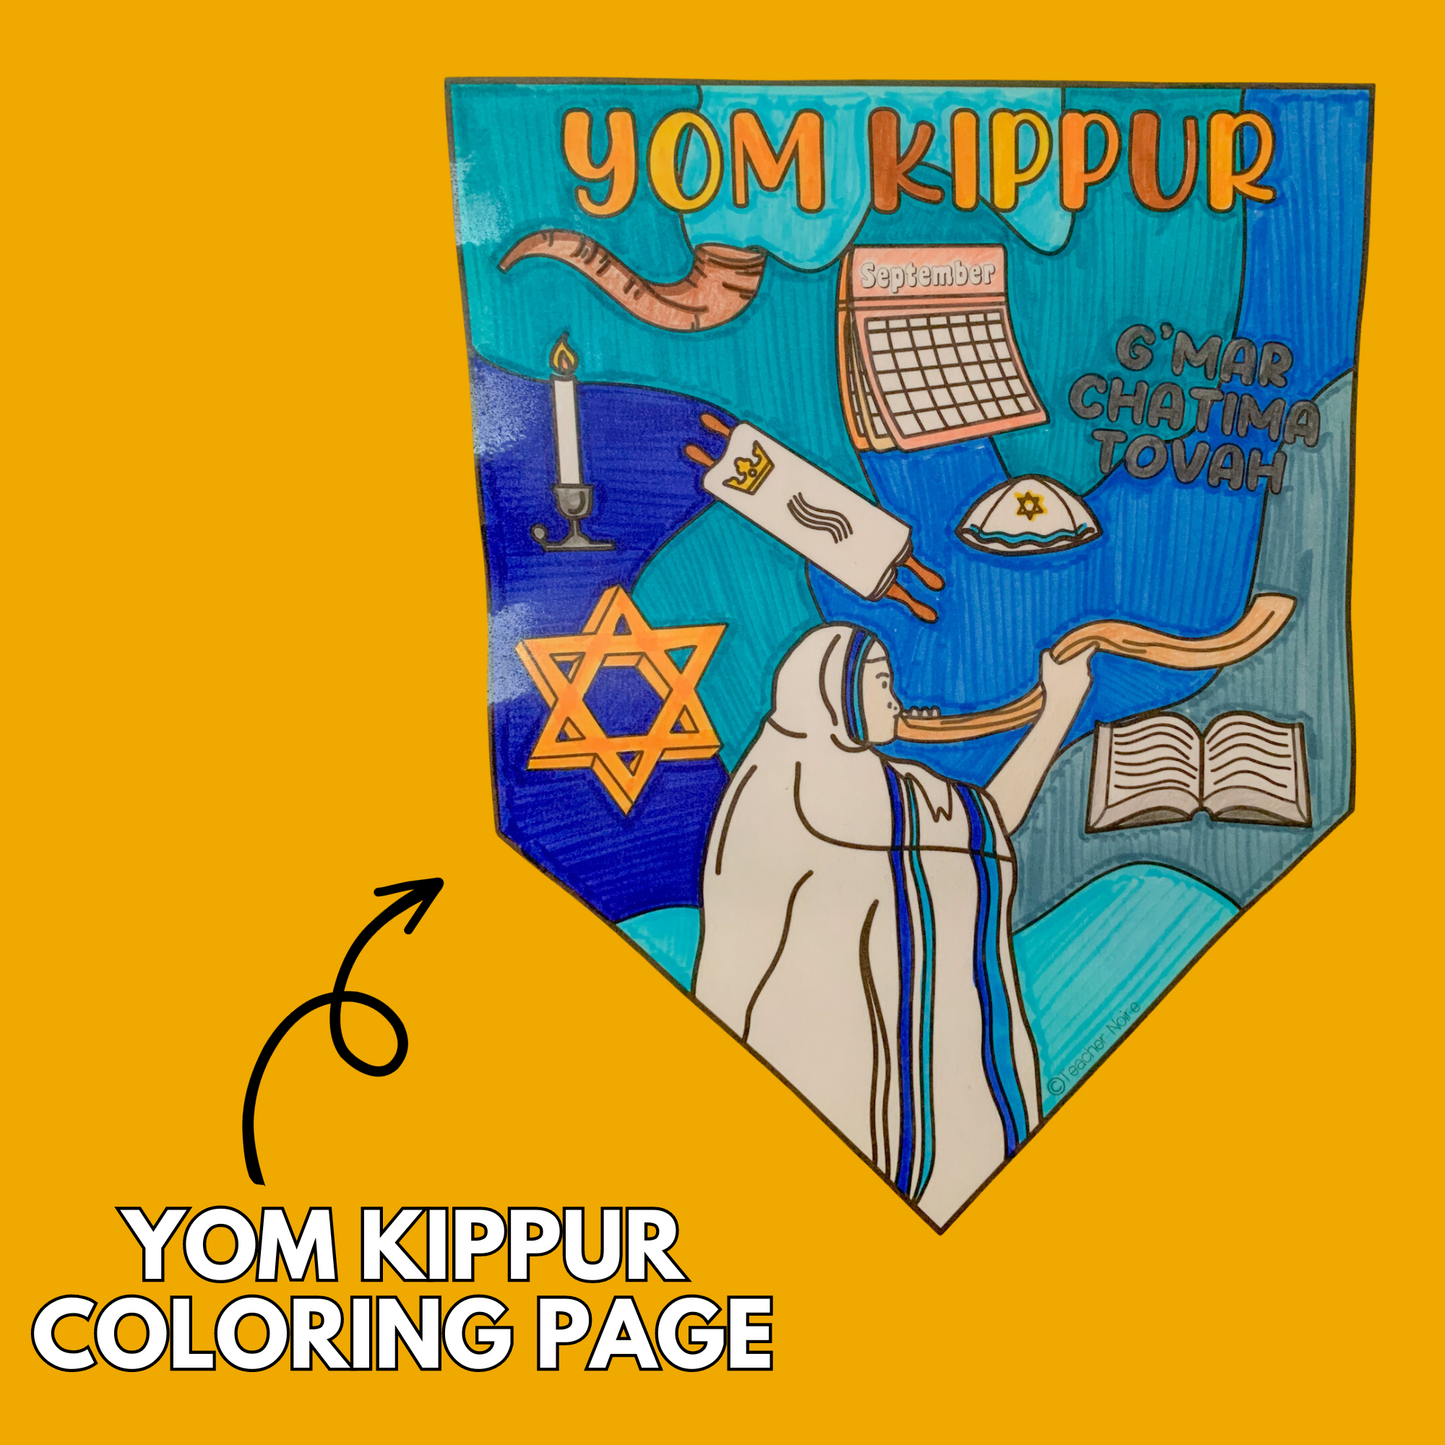 Yom Kippur Coloring Sheet